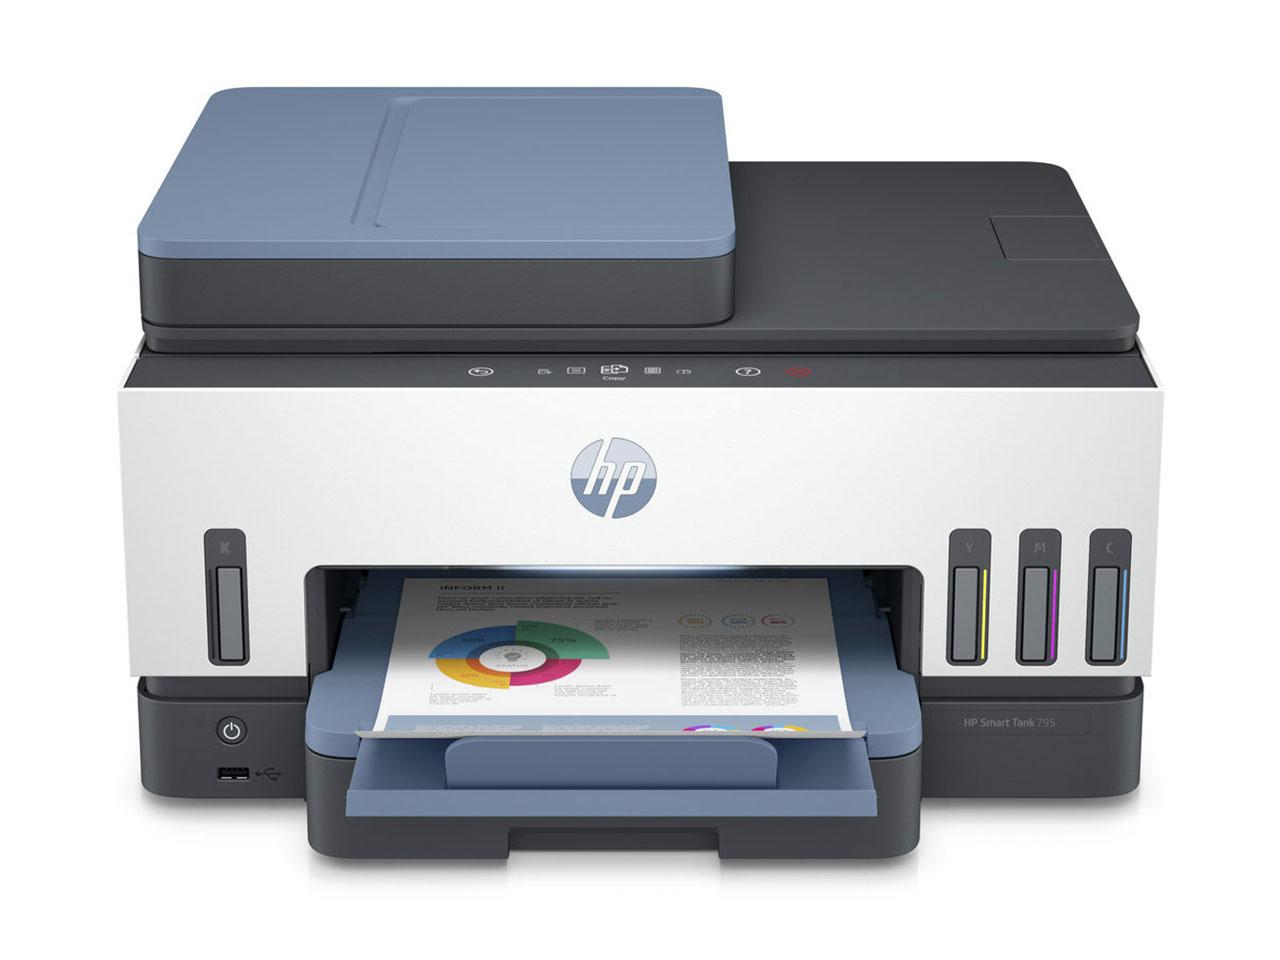 Multifunkční inkoustová barevná tiskárna HP smart tank 795, 4800 x 1200 DPI, bílomodrá